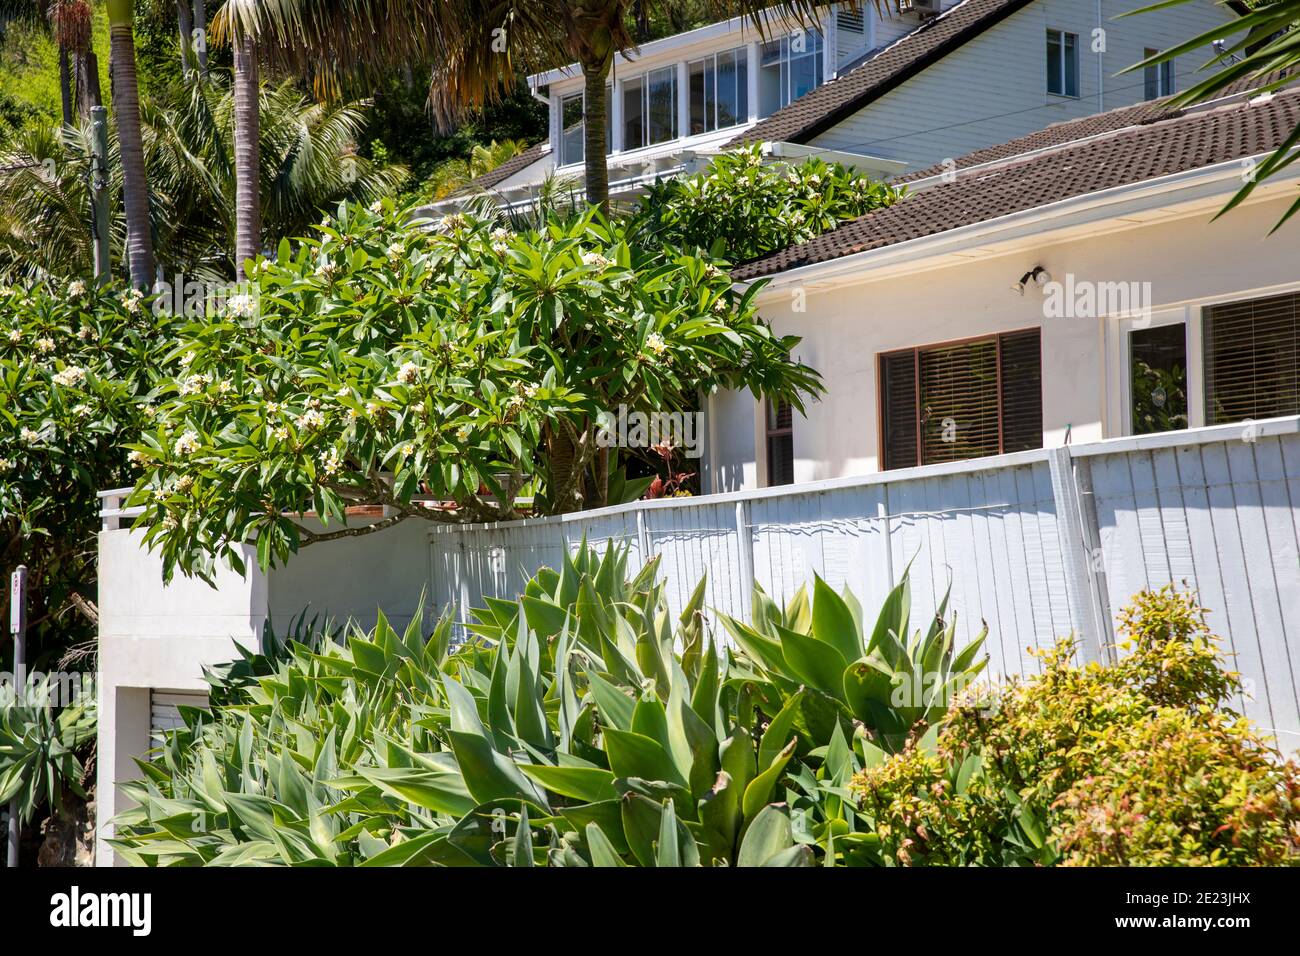 Australian Beach casa a Sydney con albero frangipani e agave Piante attenuata nel giardino anteriore in un giorno estivo, Sydney, Australia Foto Stock